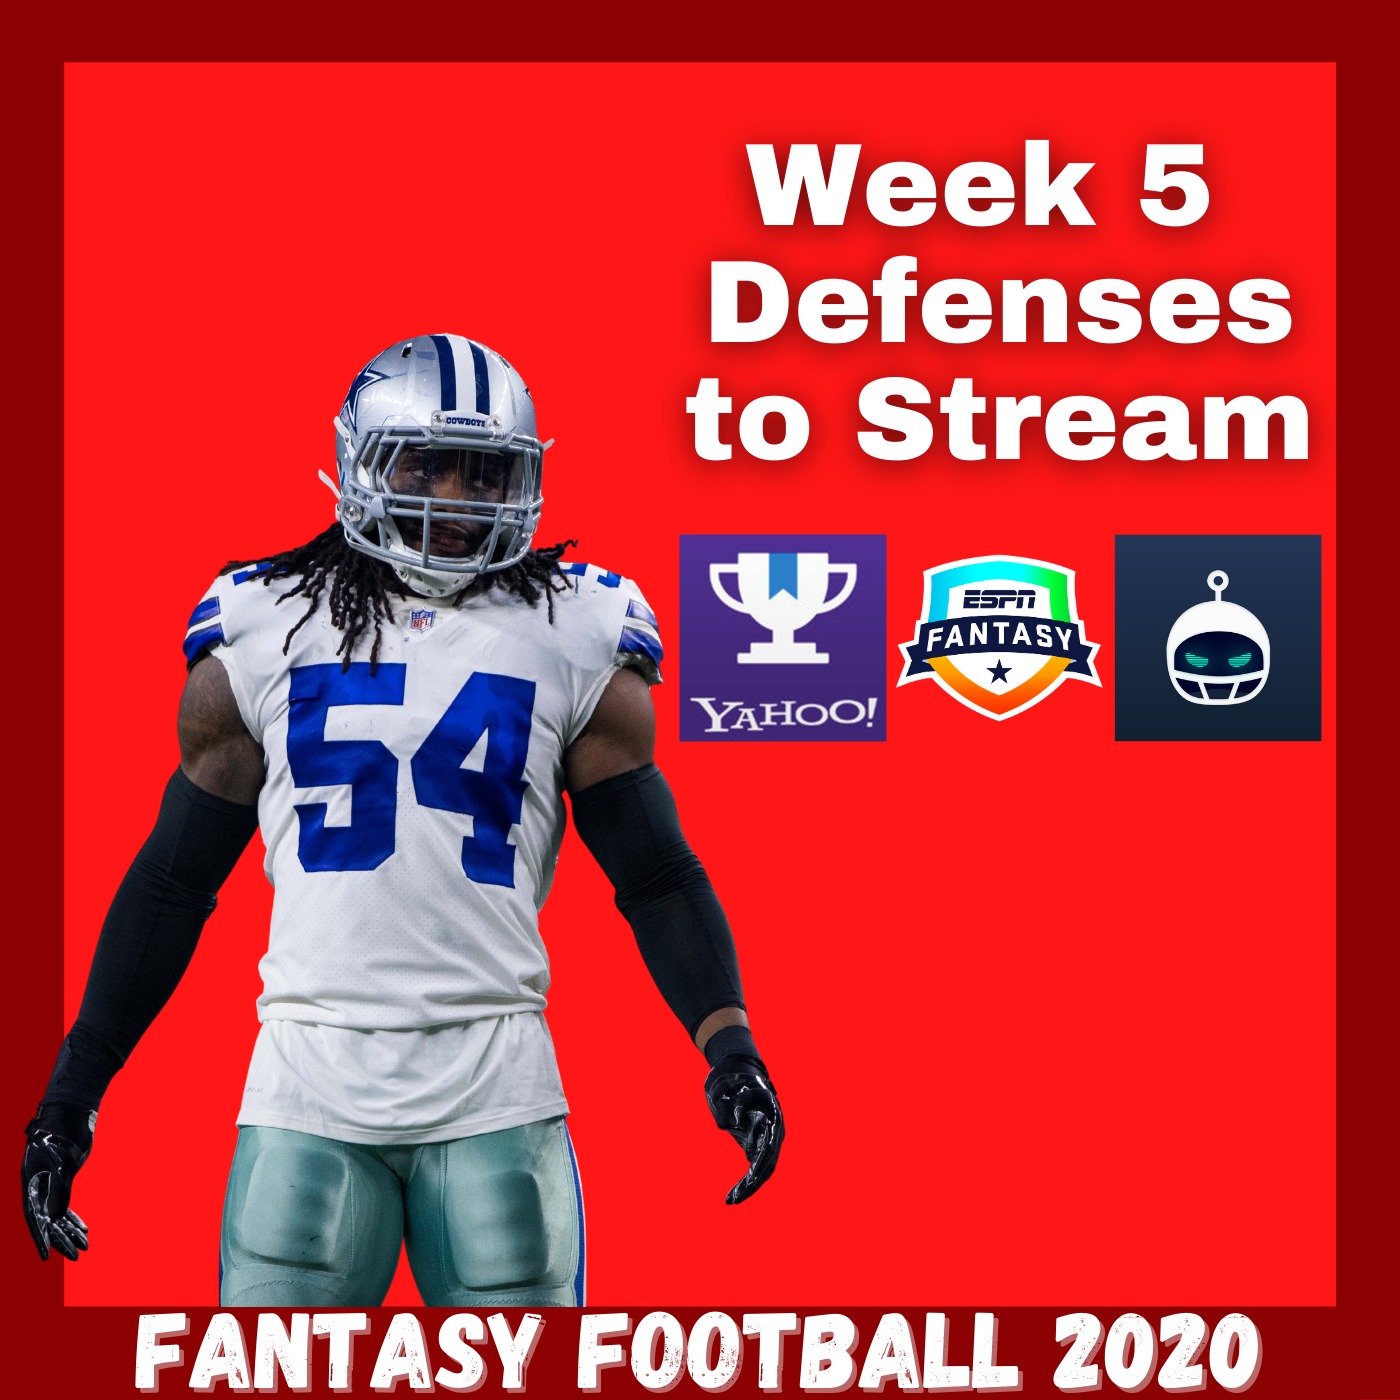 Week 5 Defenses to Stream Image